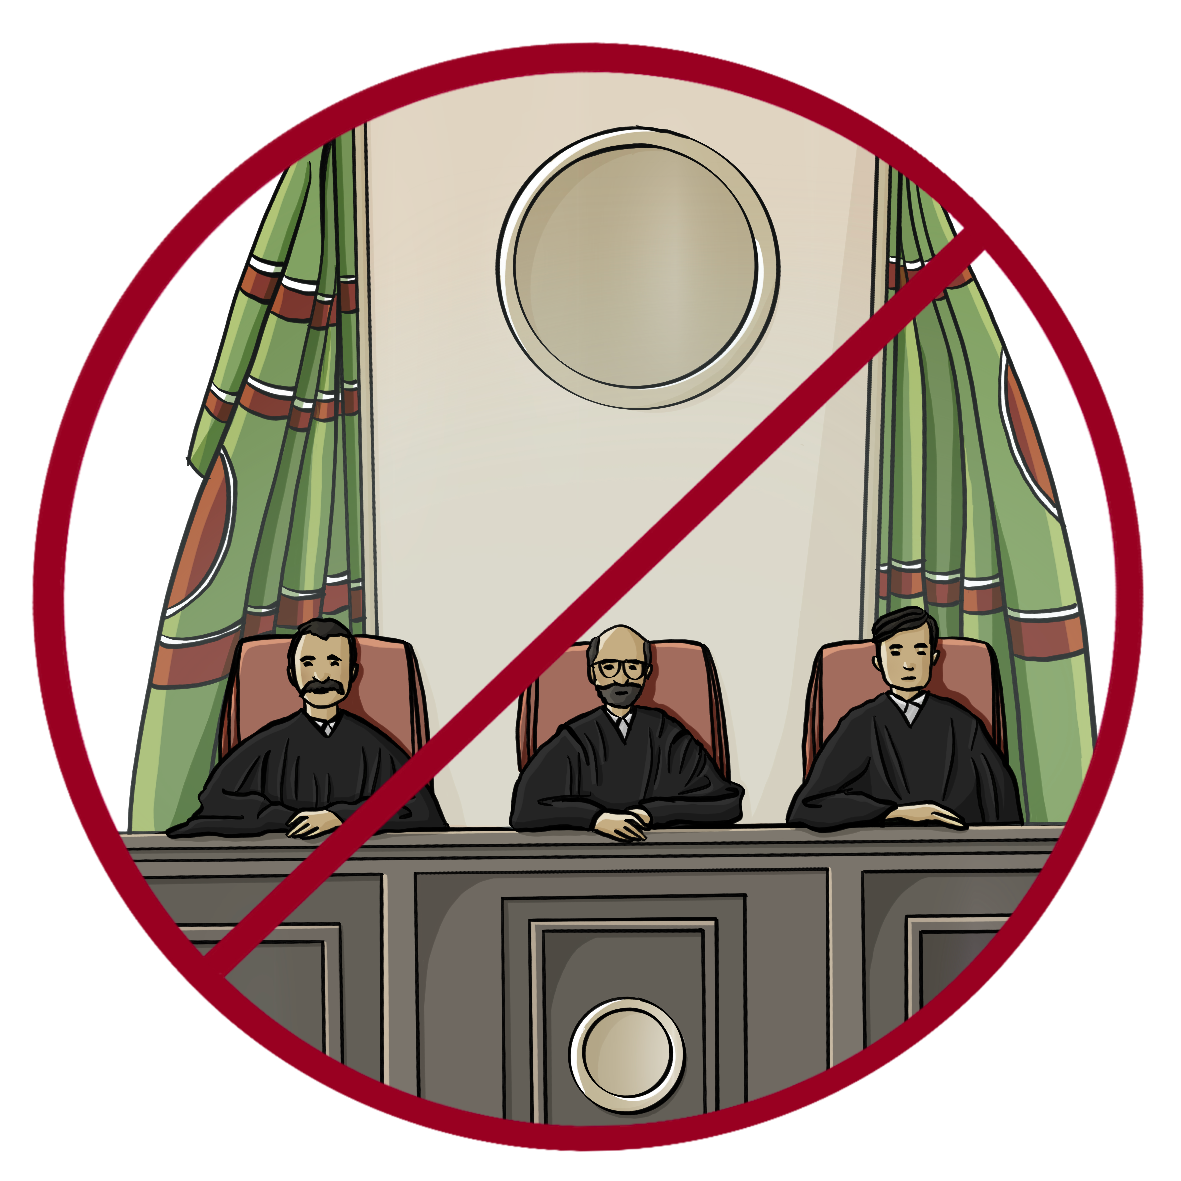 Drei Männer in schwarzen Roben sitzen an einem hohen Holztisch. Hinter Ihnen sind fiktive Flaggen in grün und rot. Das Bild ist durchgestrichen.